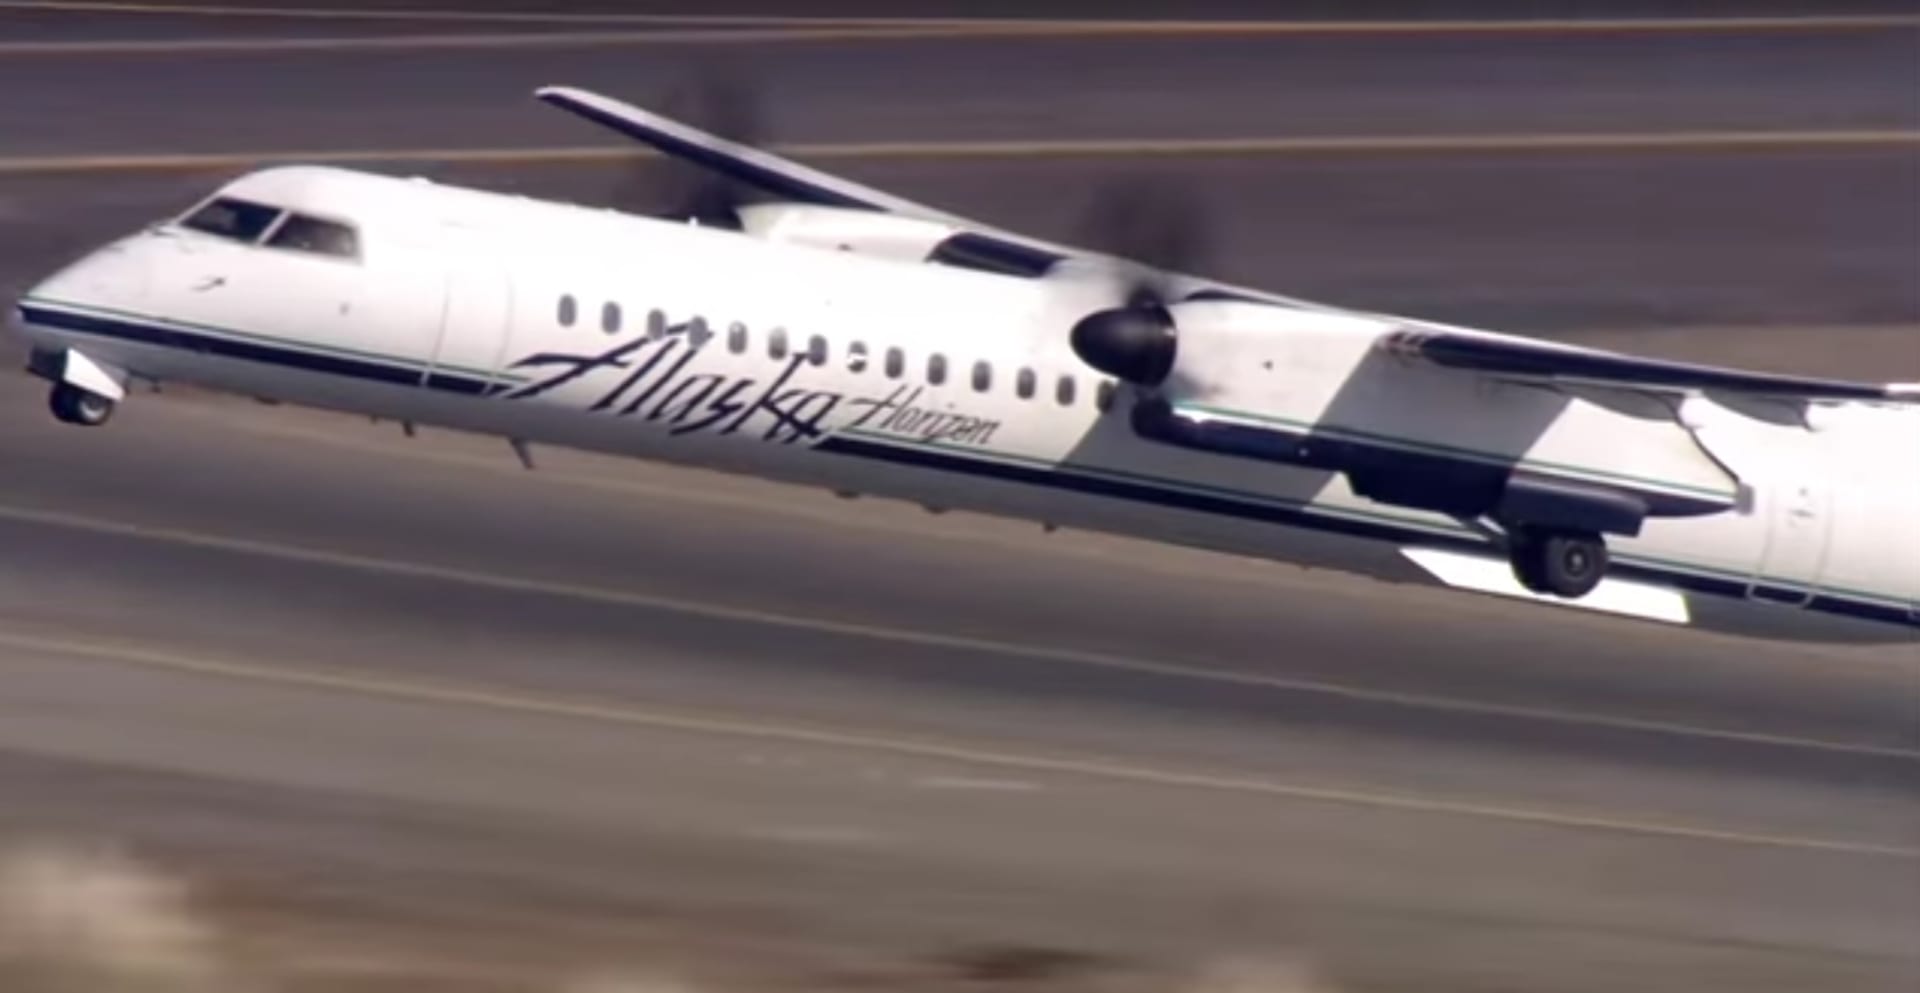 Unesený turbovrtulový Q400 Bombardier právě startuje z letiště v Seattlu. V letadle je jediný člověk: pilot-sebevrah